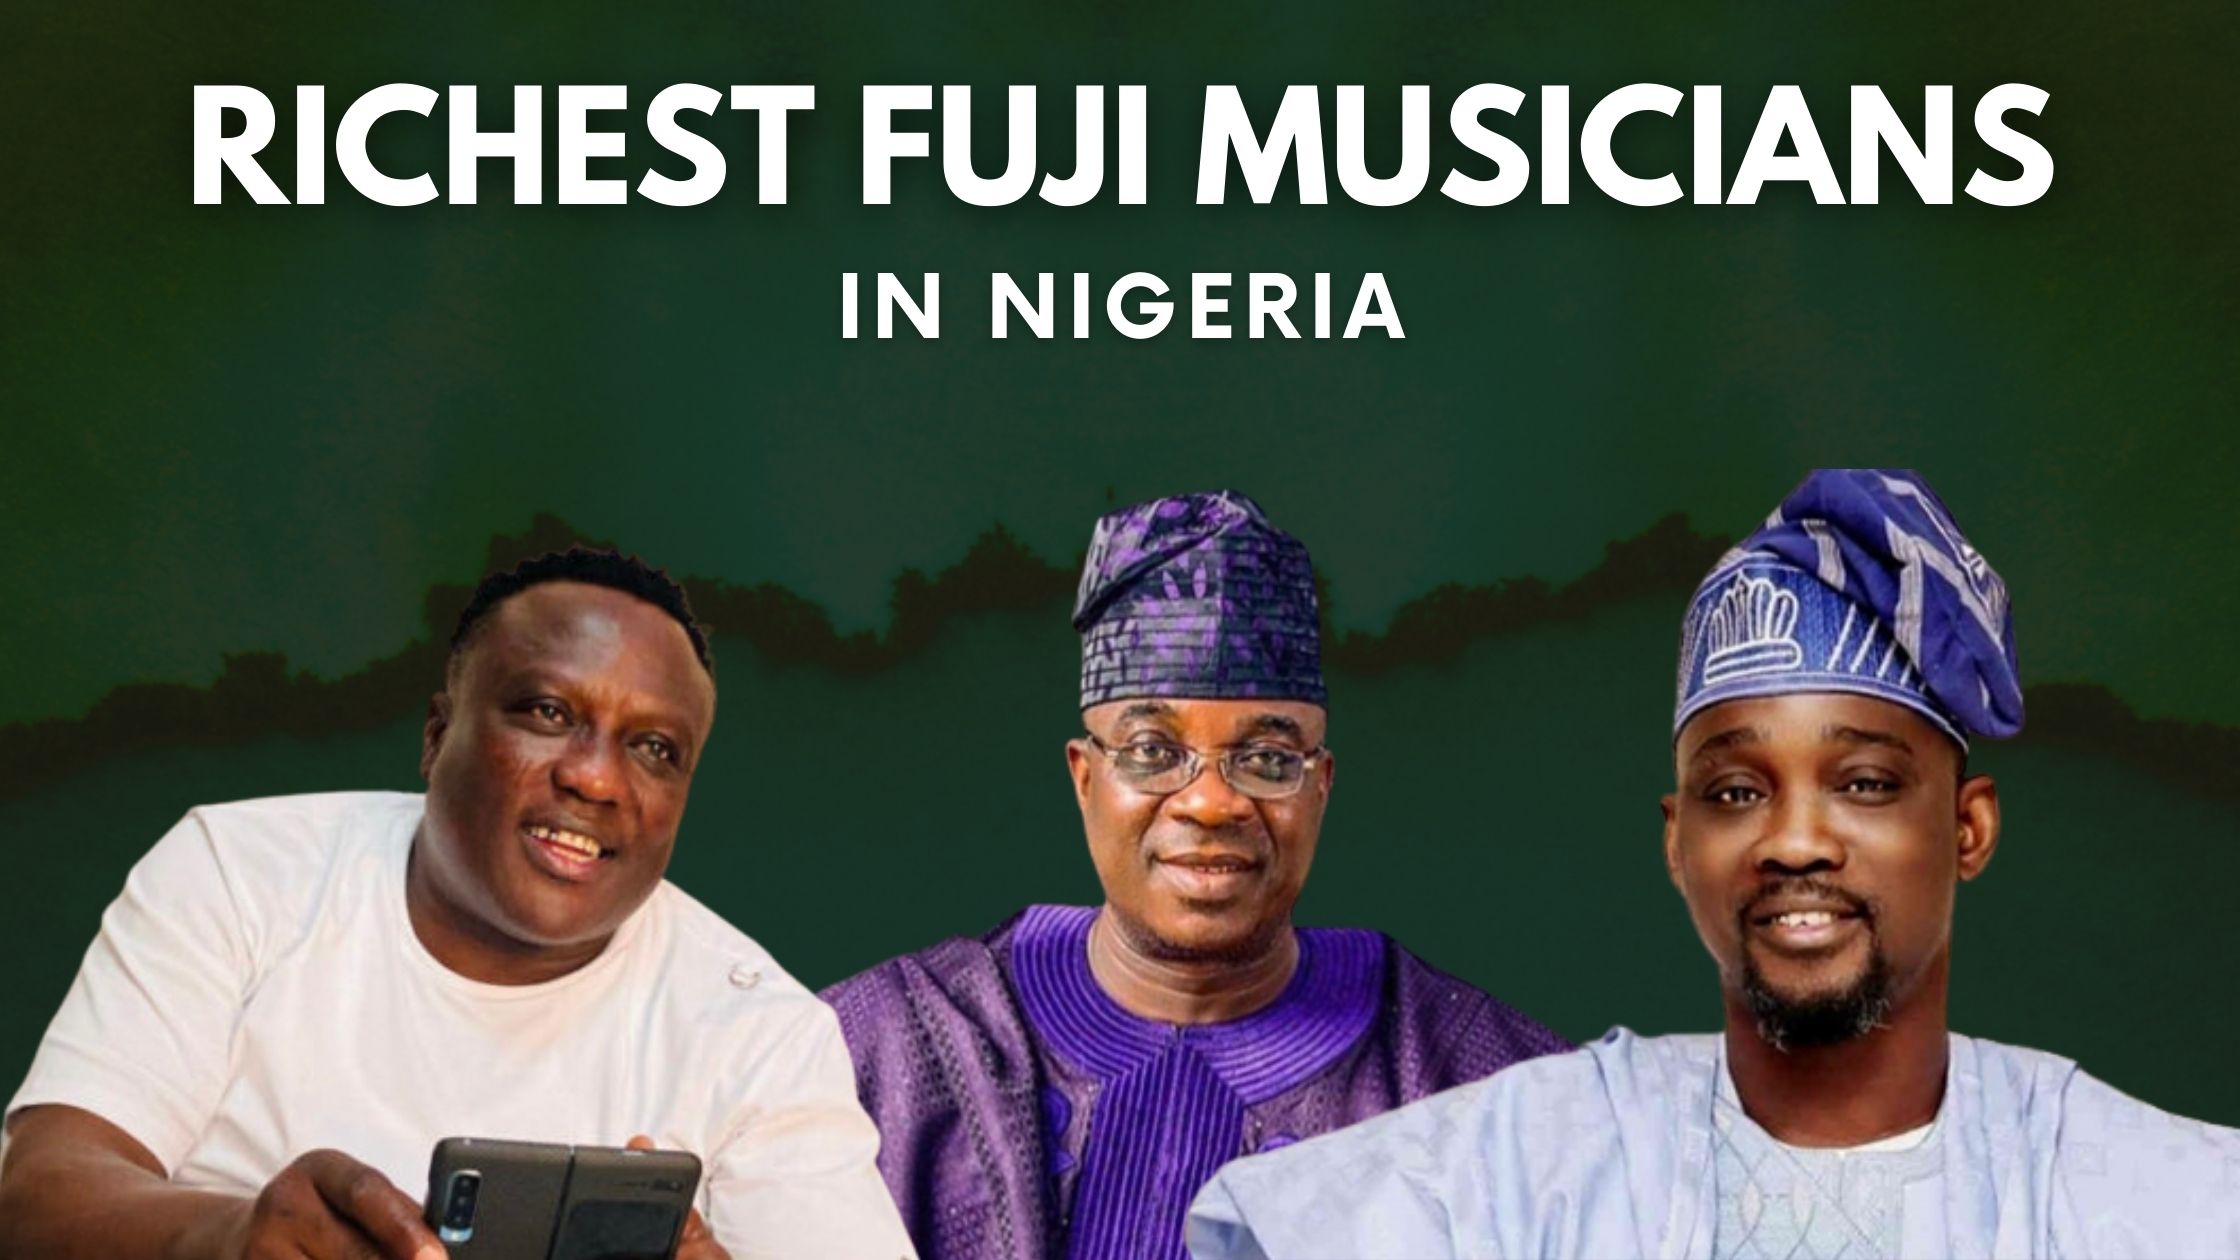 Top 10 Richest Fuji Musicians In Nigeria (2022)